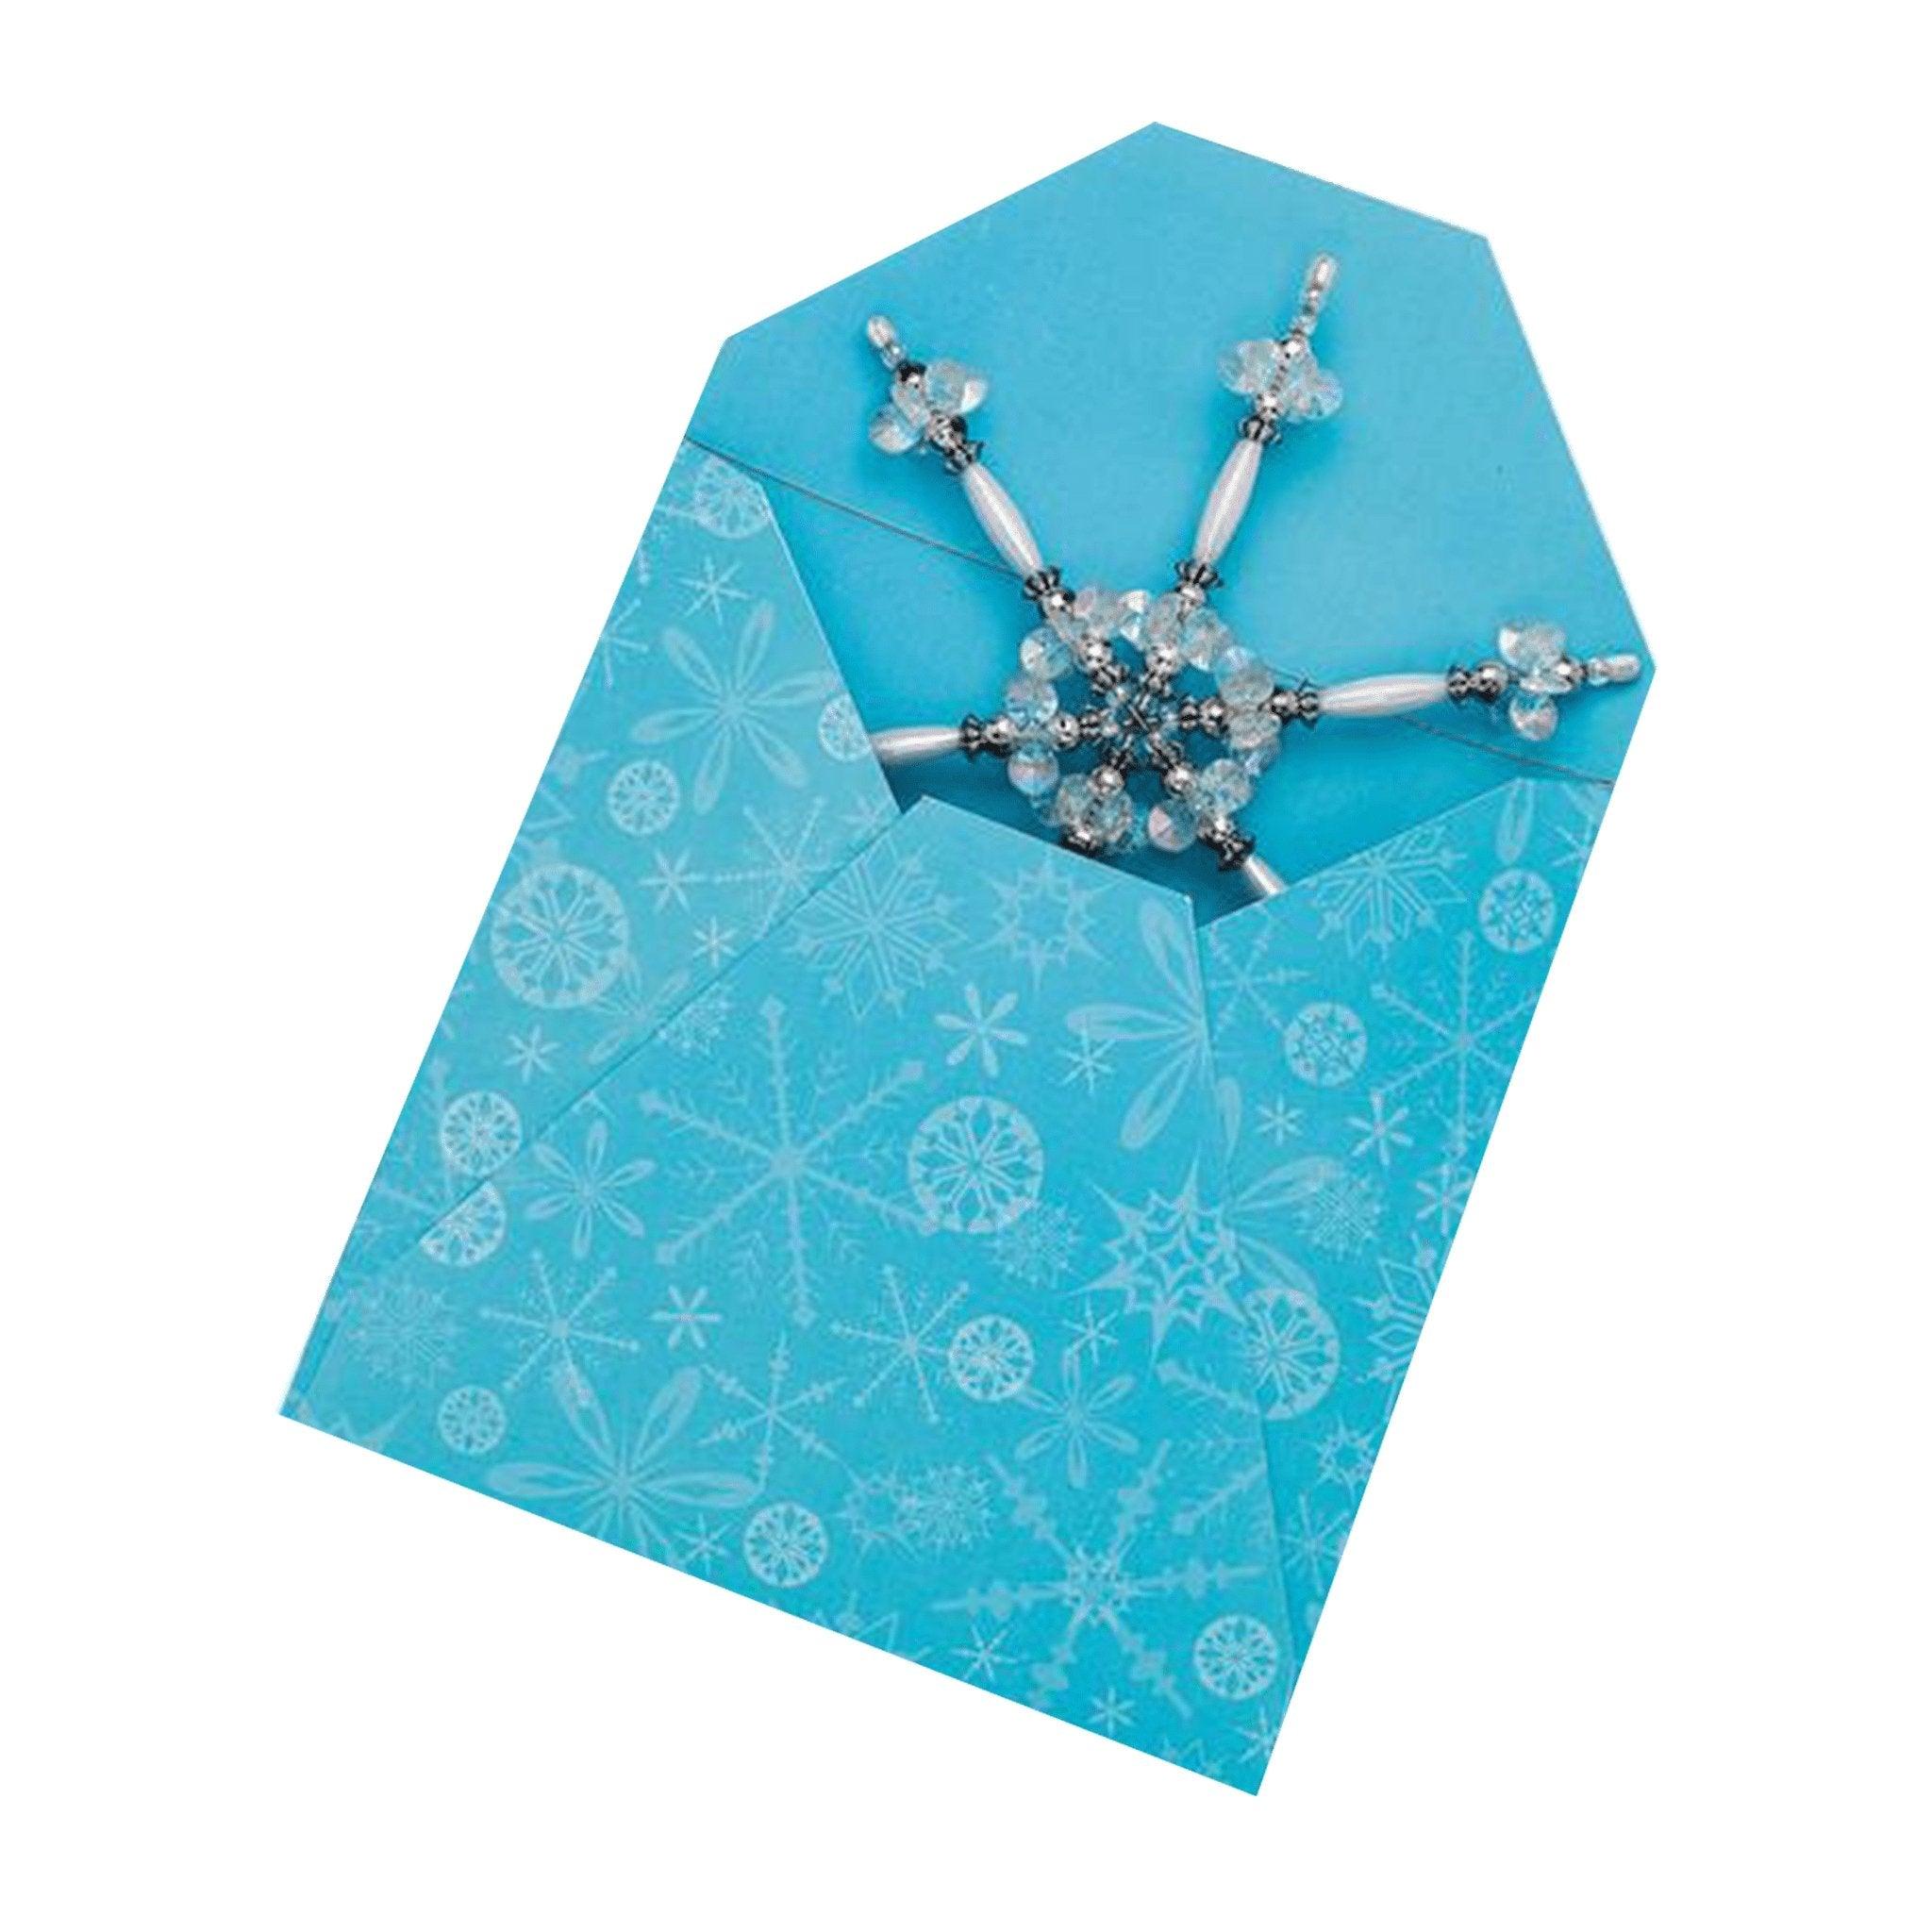 Beaded Snowflake Ornaments - Matuska Taxidermy Supply Company